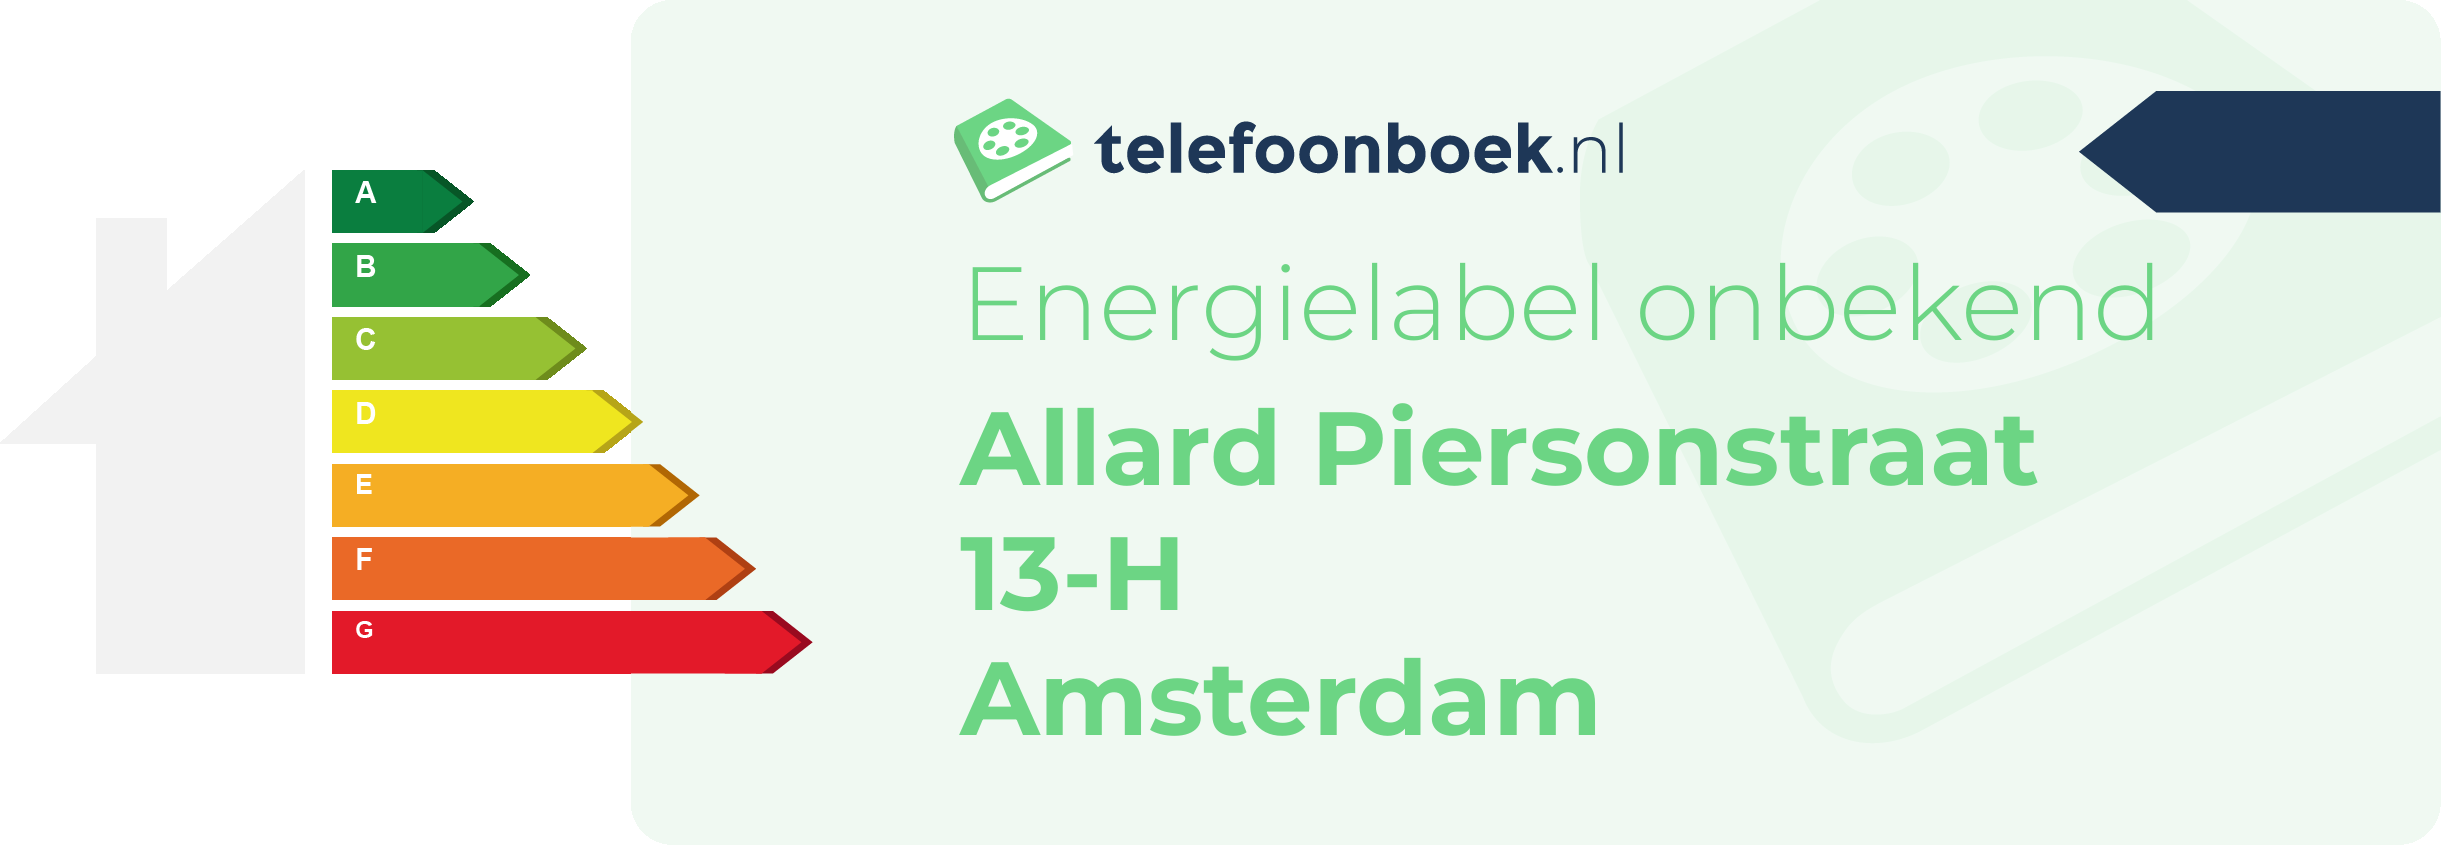 Energielabel Allard Piersonstraat 13-H Amsterdam